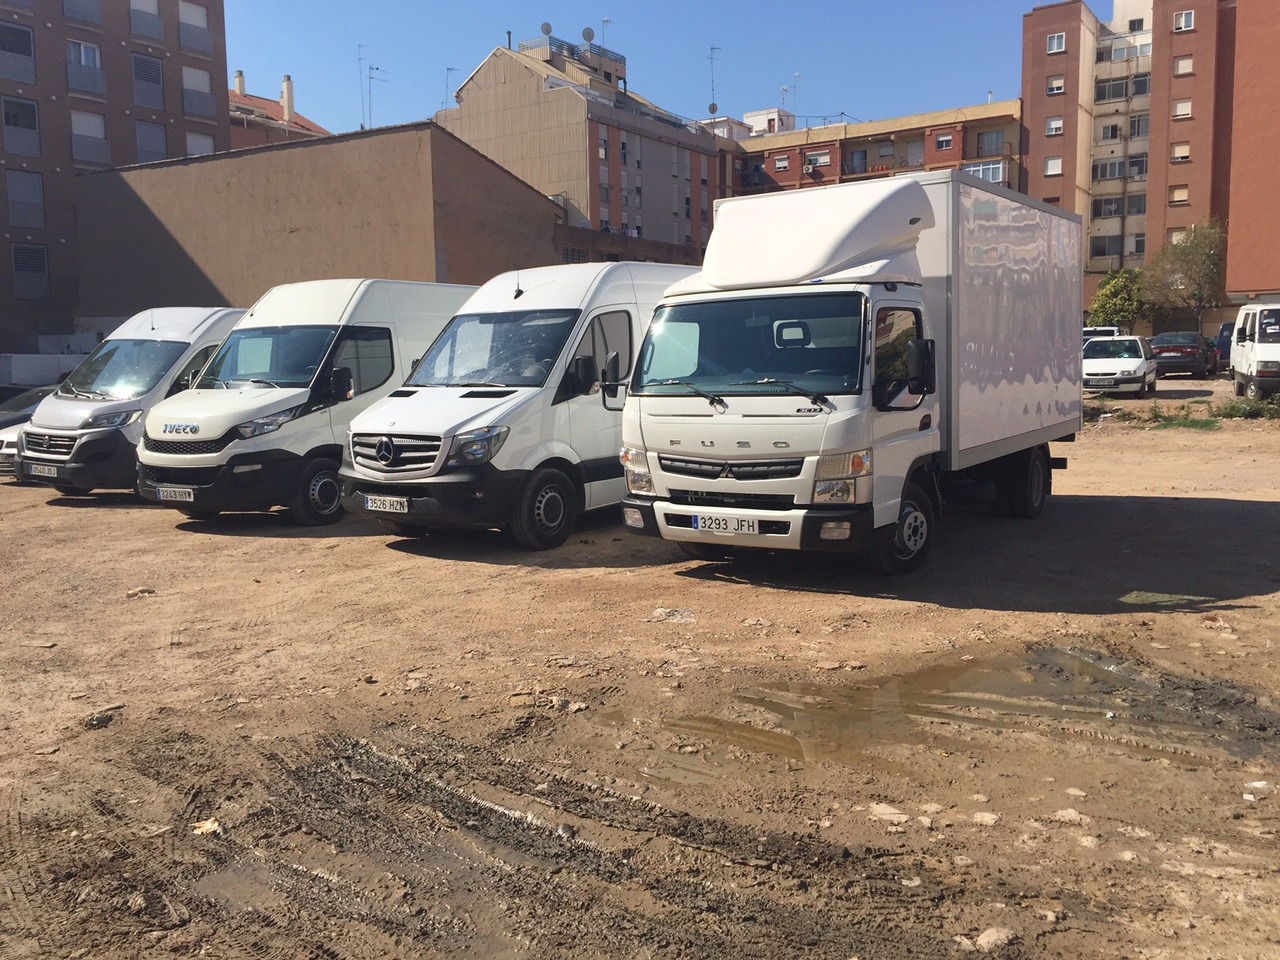 Camiones aparcados Valencia